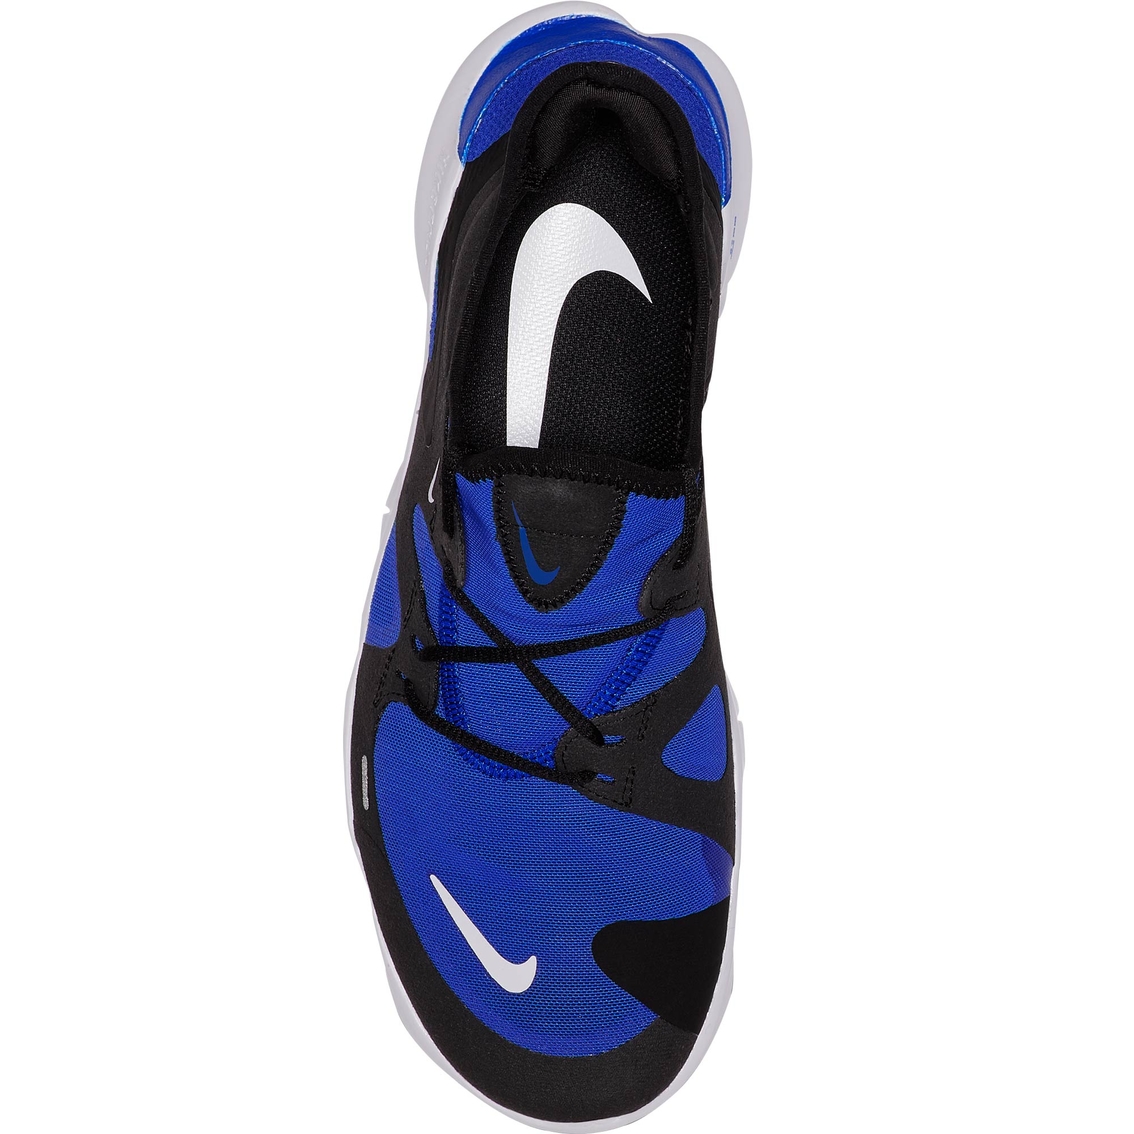 Nike Men's Free RN 5.0 Running Shoes - Image 4 of 6